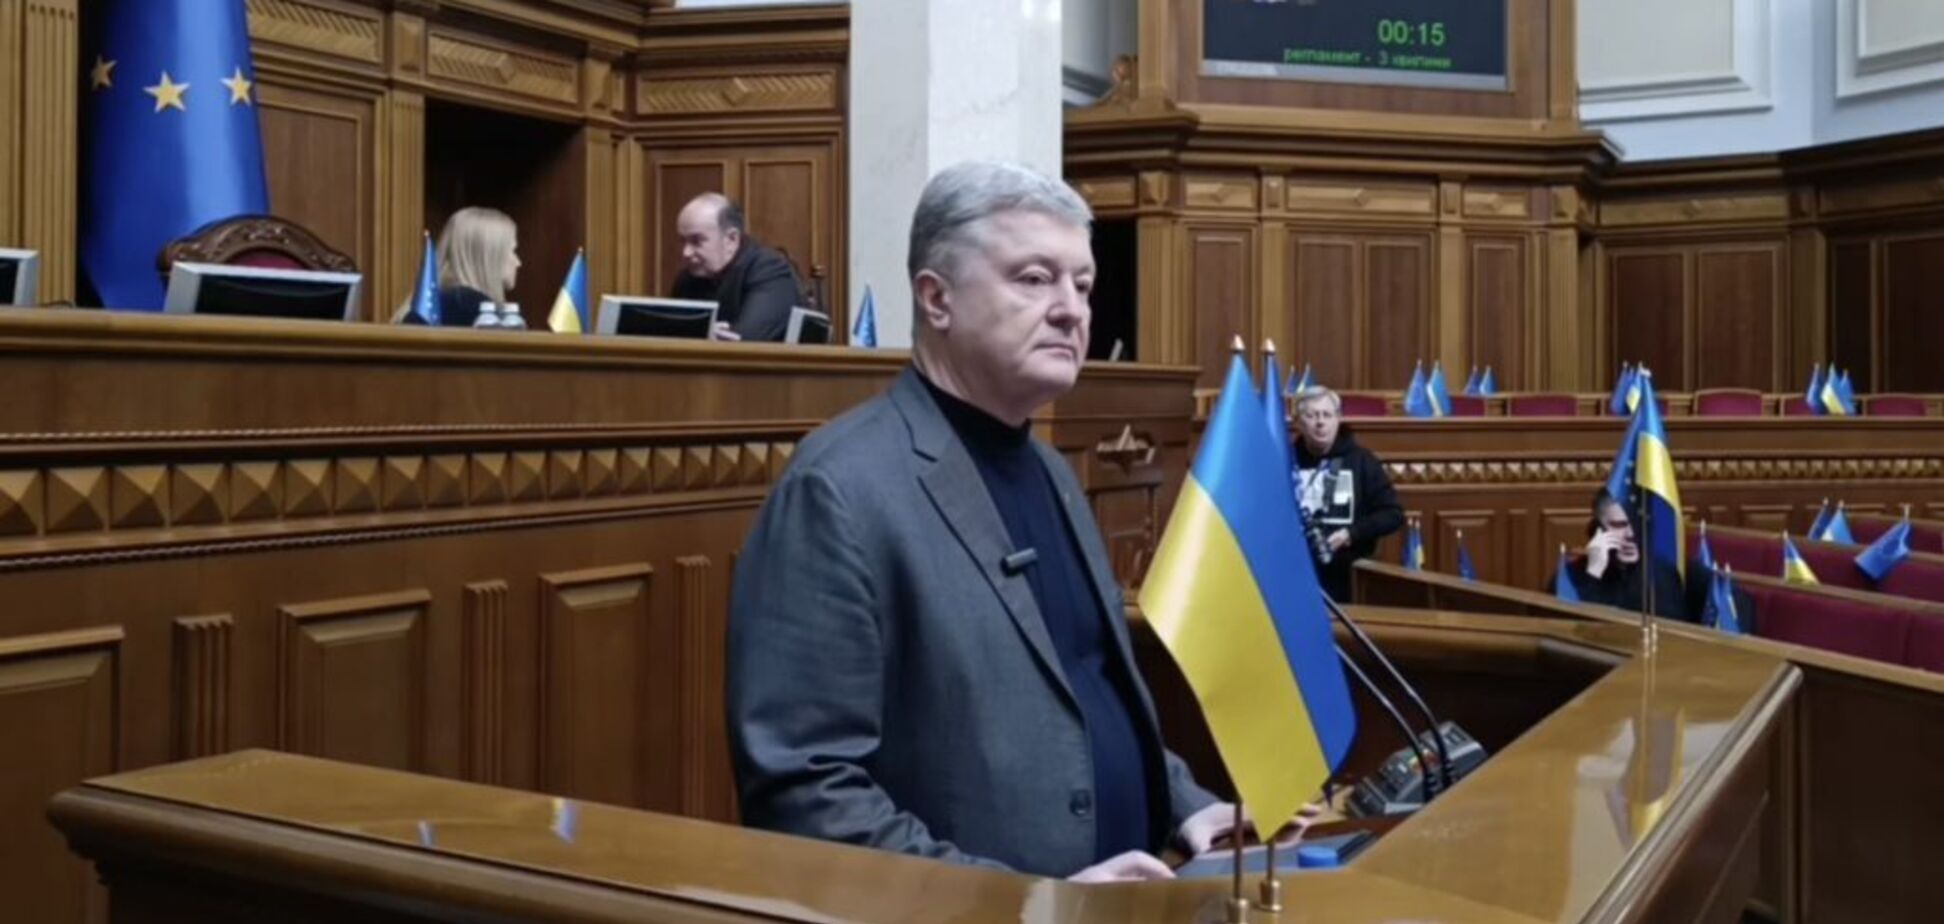 Фортификации, оружие и его производство, дроны и РЕБ: Порошенко назвал пять ключевых пунктов стратегии победы Украины